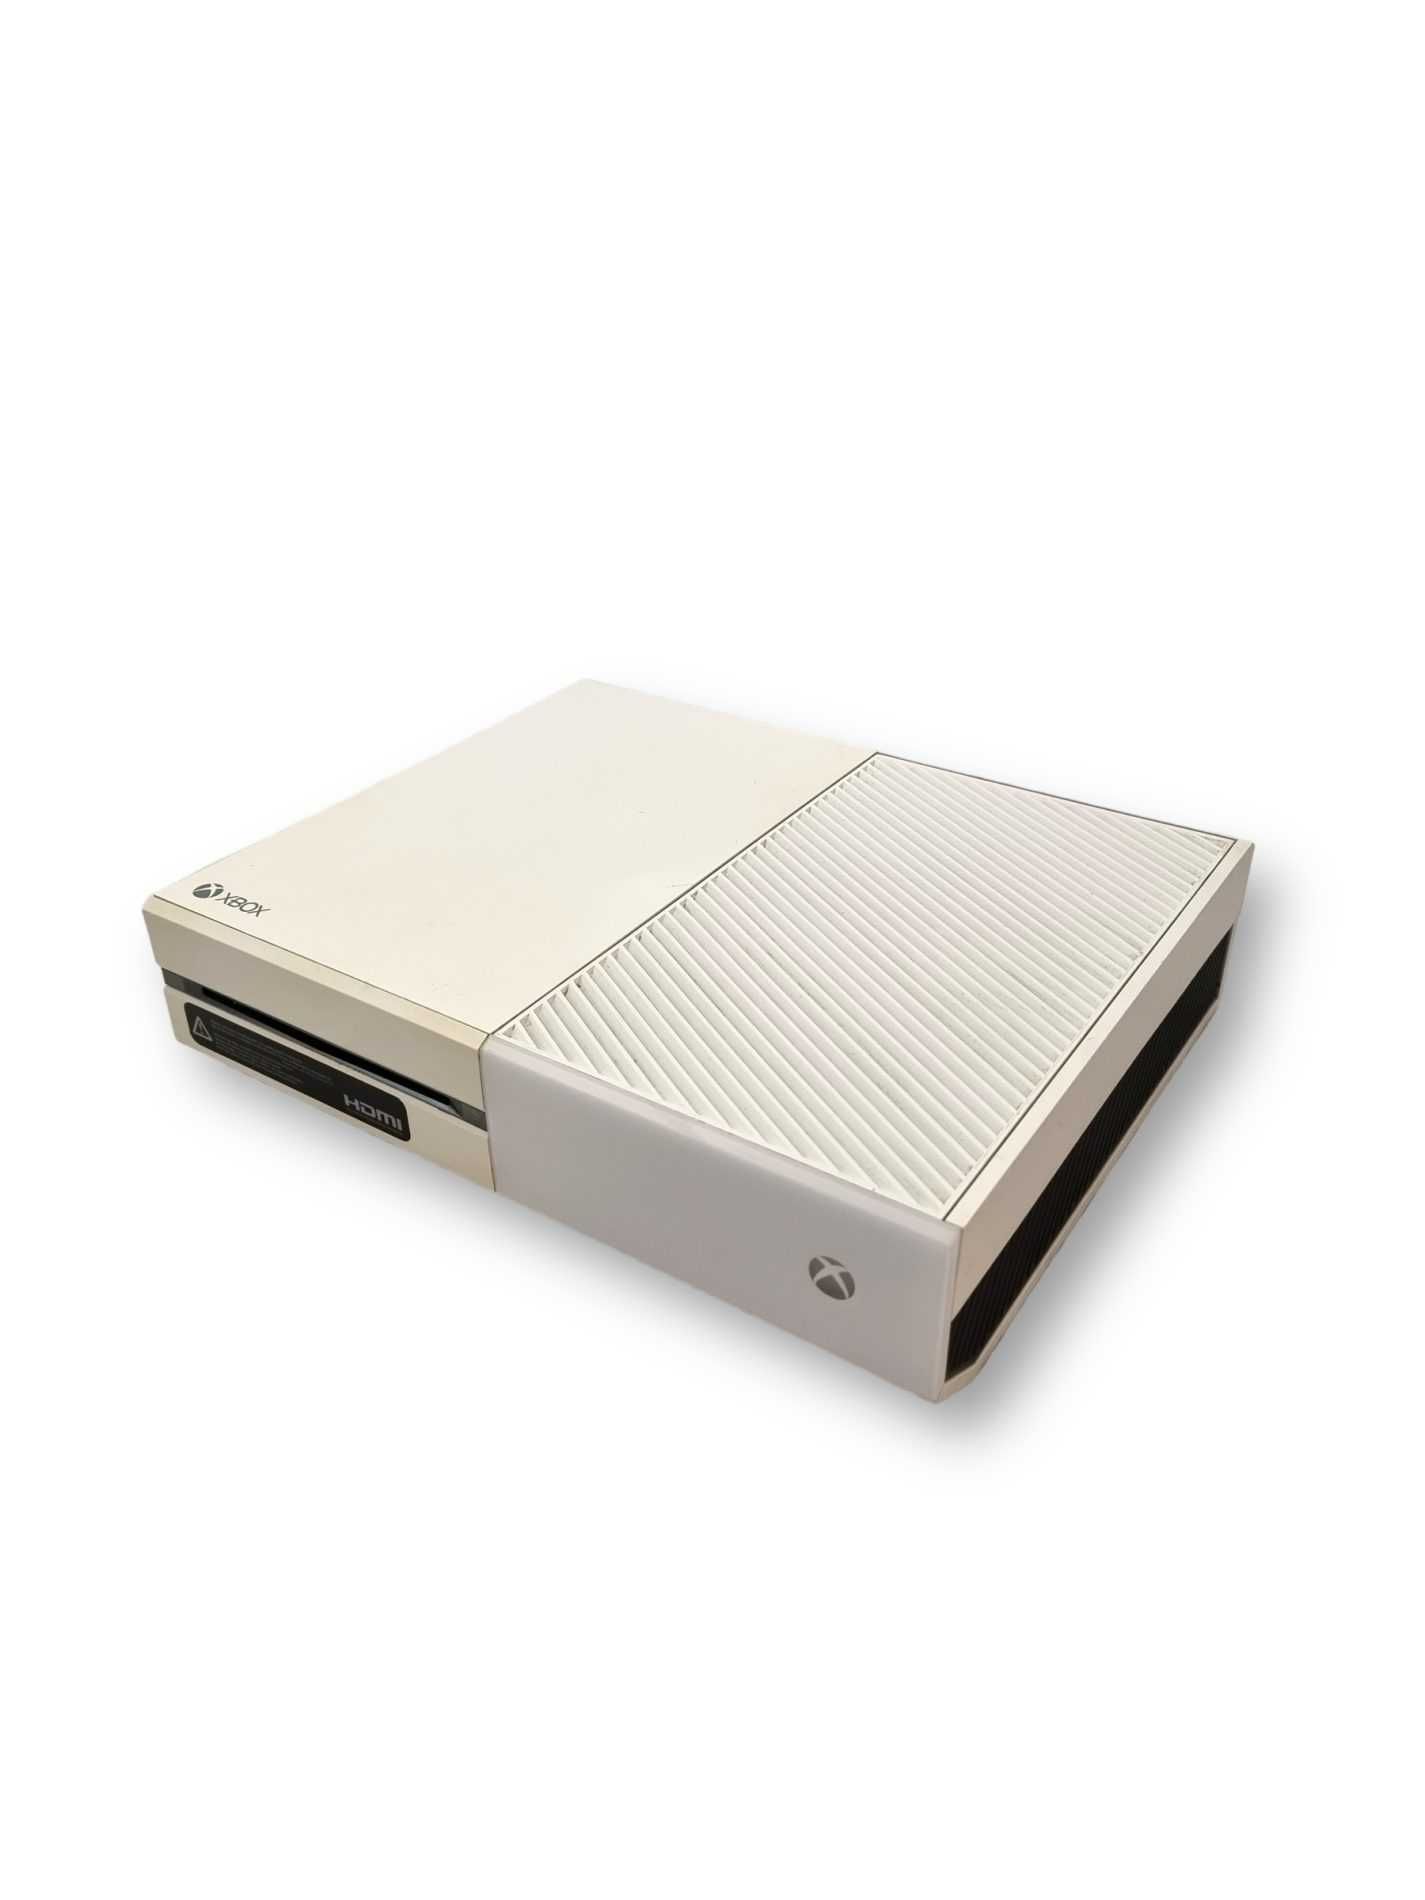 Konsola Xbox One 500GB biała + pad